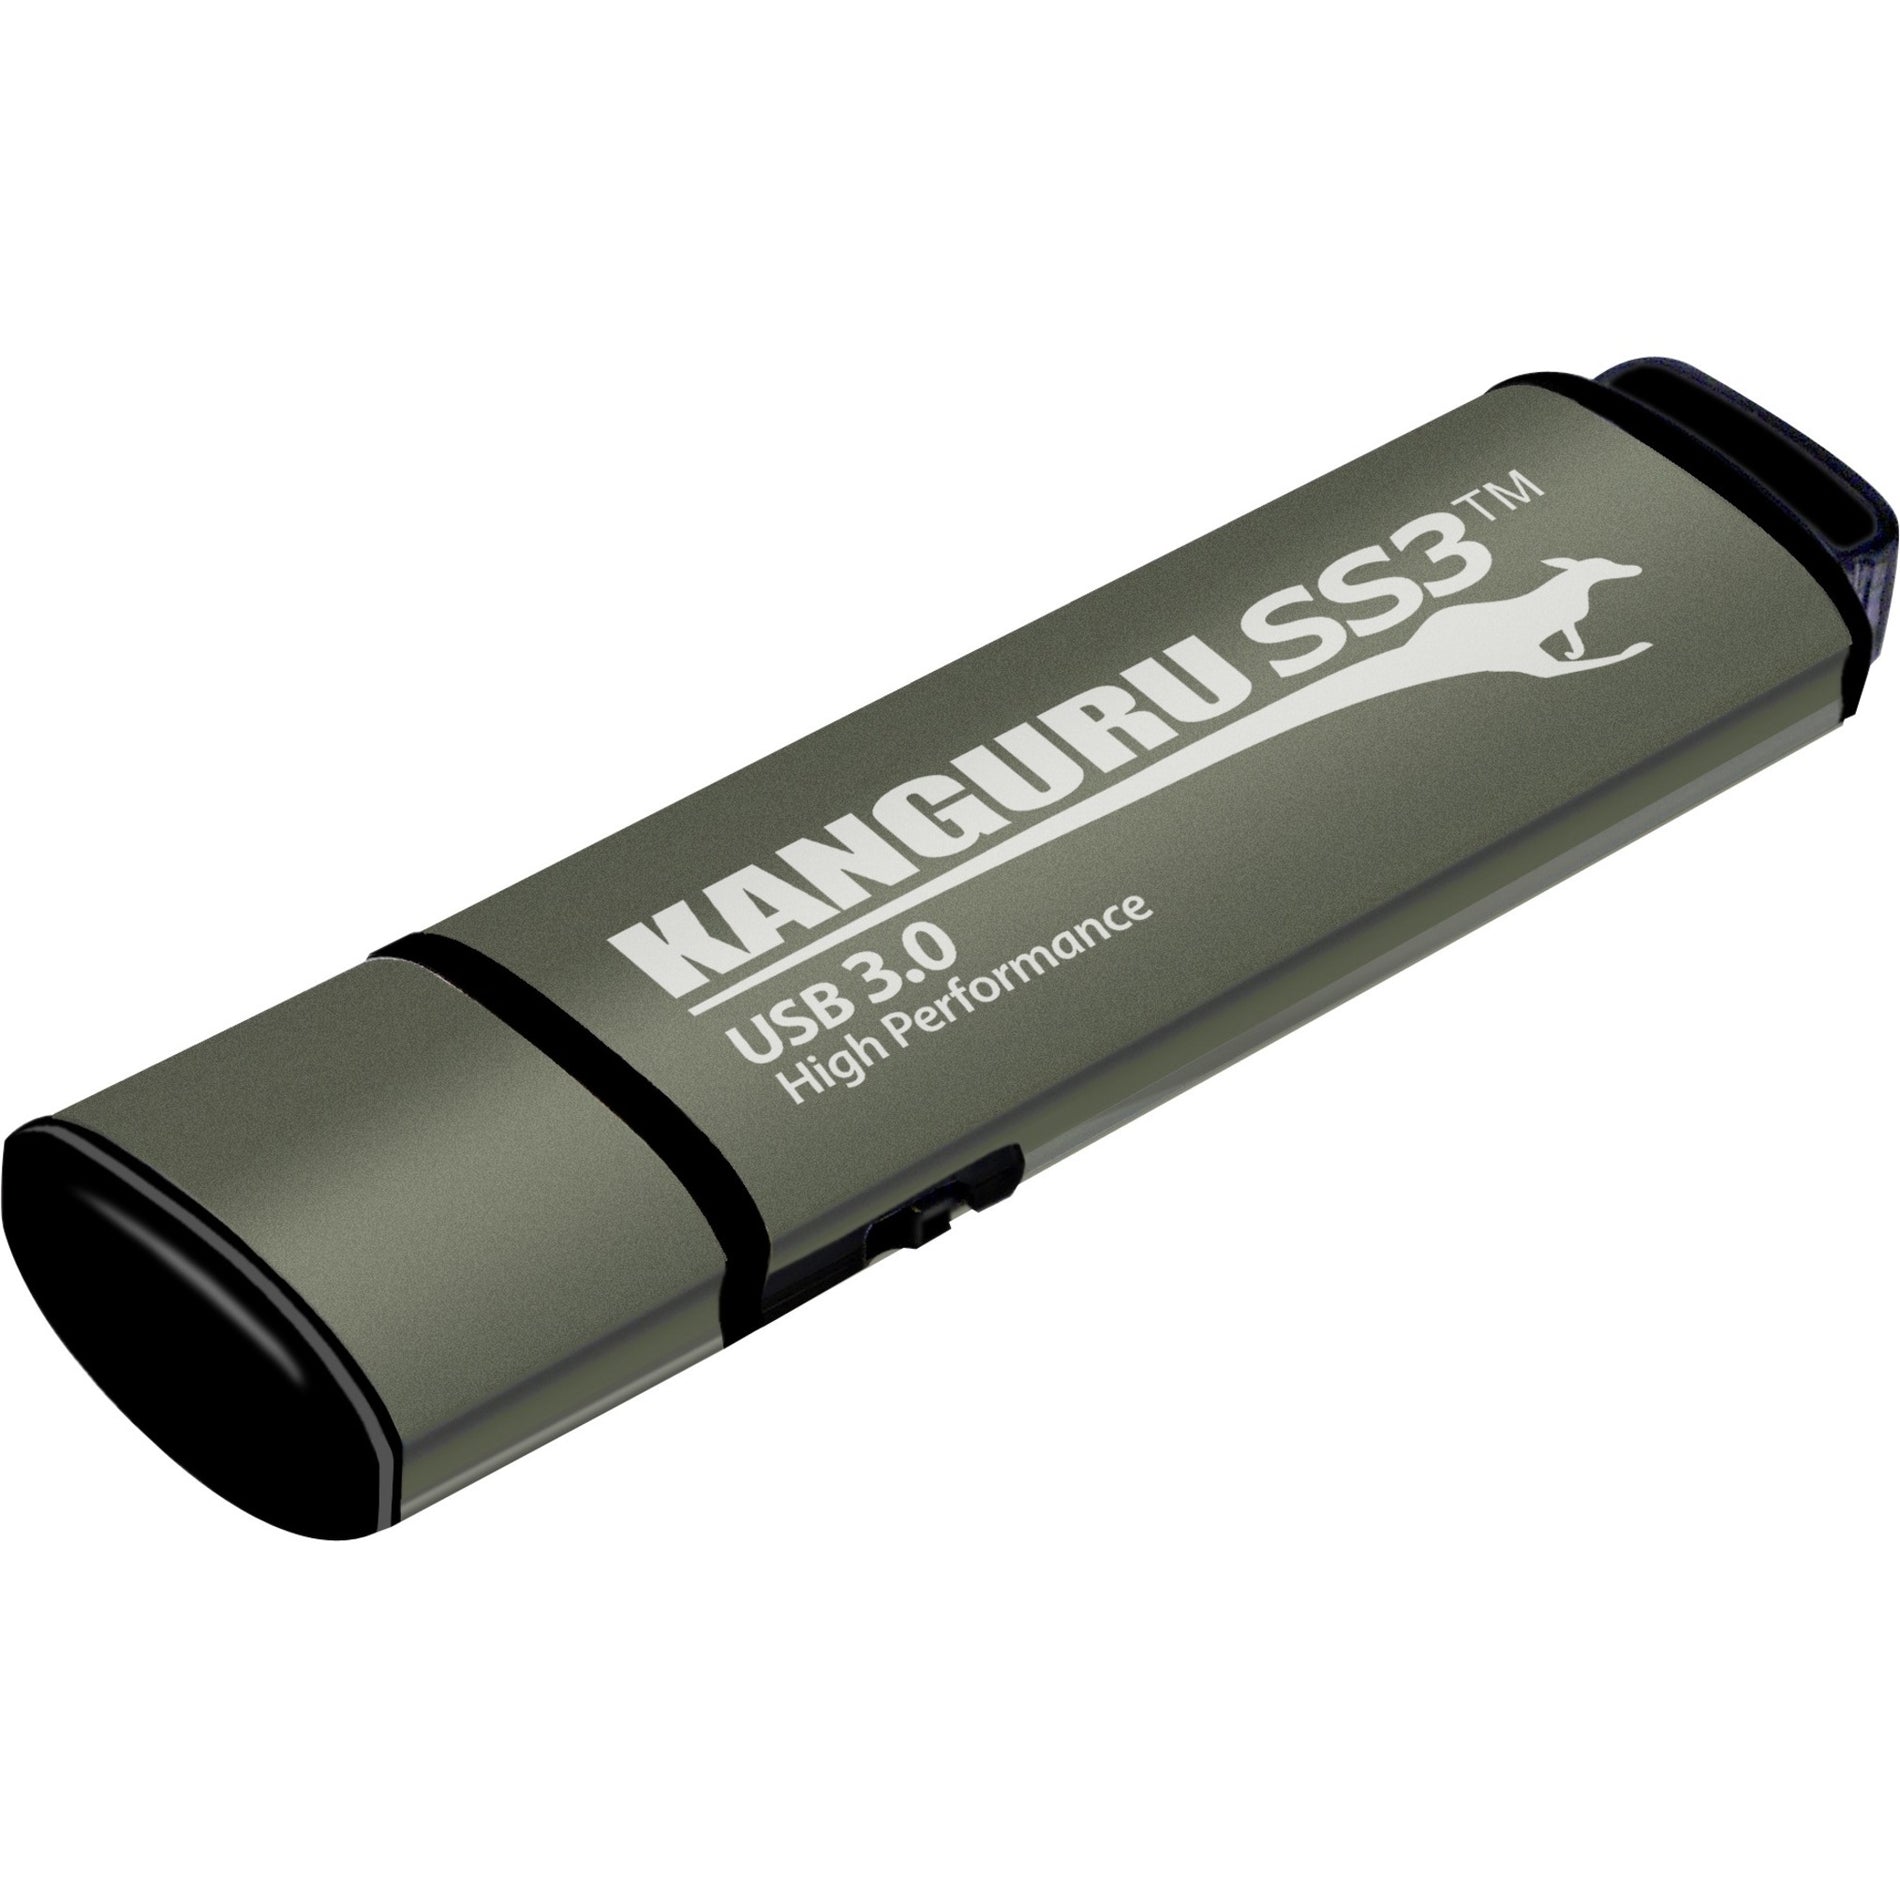 Kanguru KF3WP-128G SS3 USB 30 Flash Drive mit Schreibschutzschalter 128GB Speicherkapazität